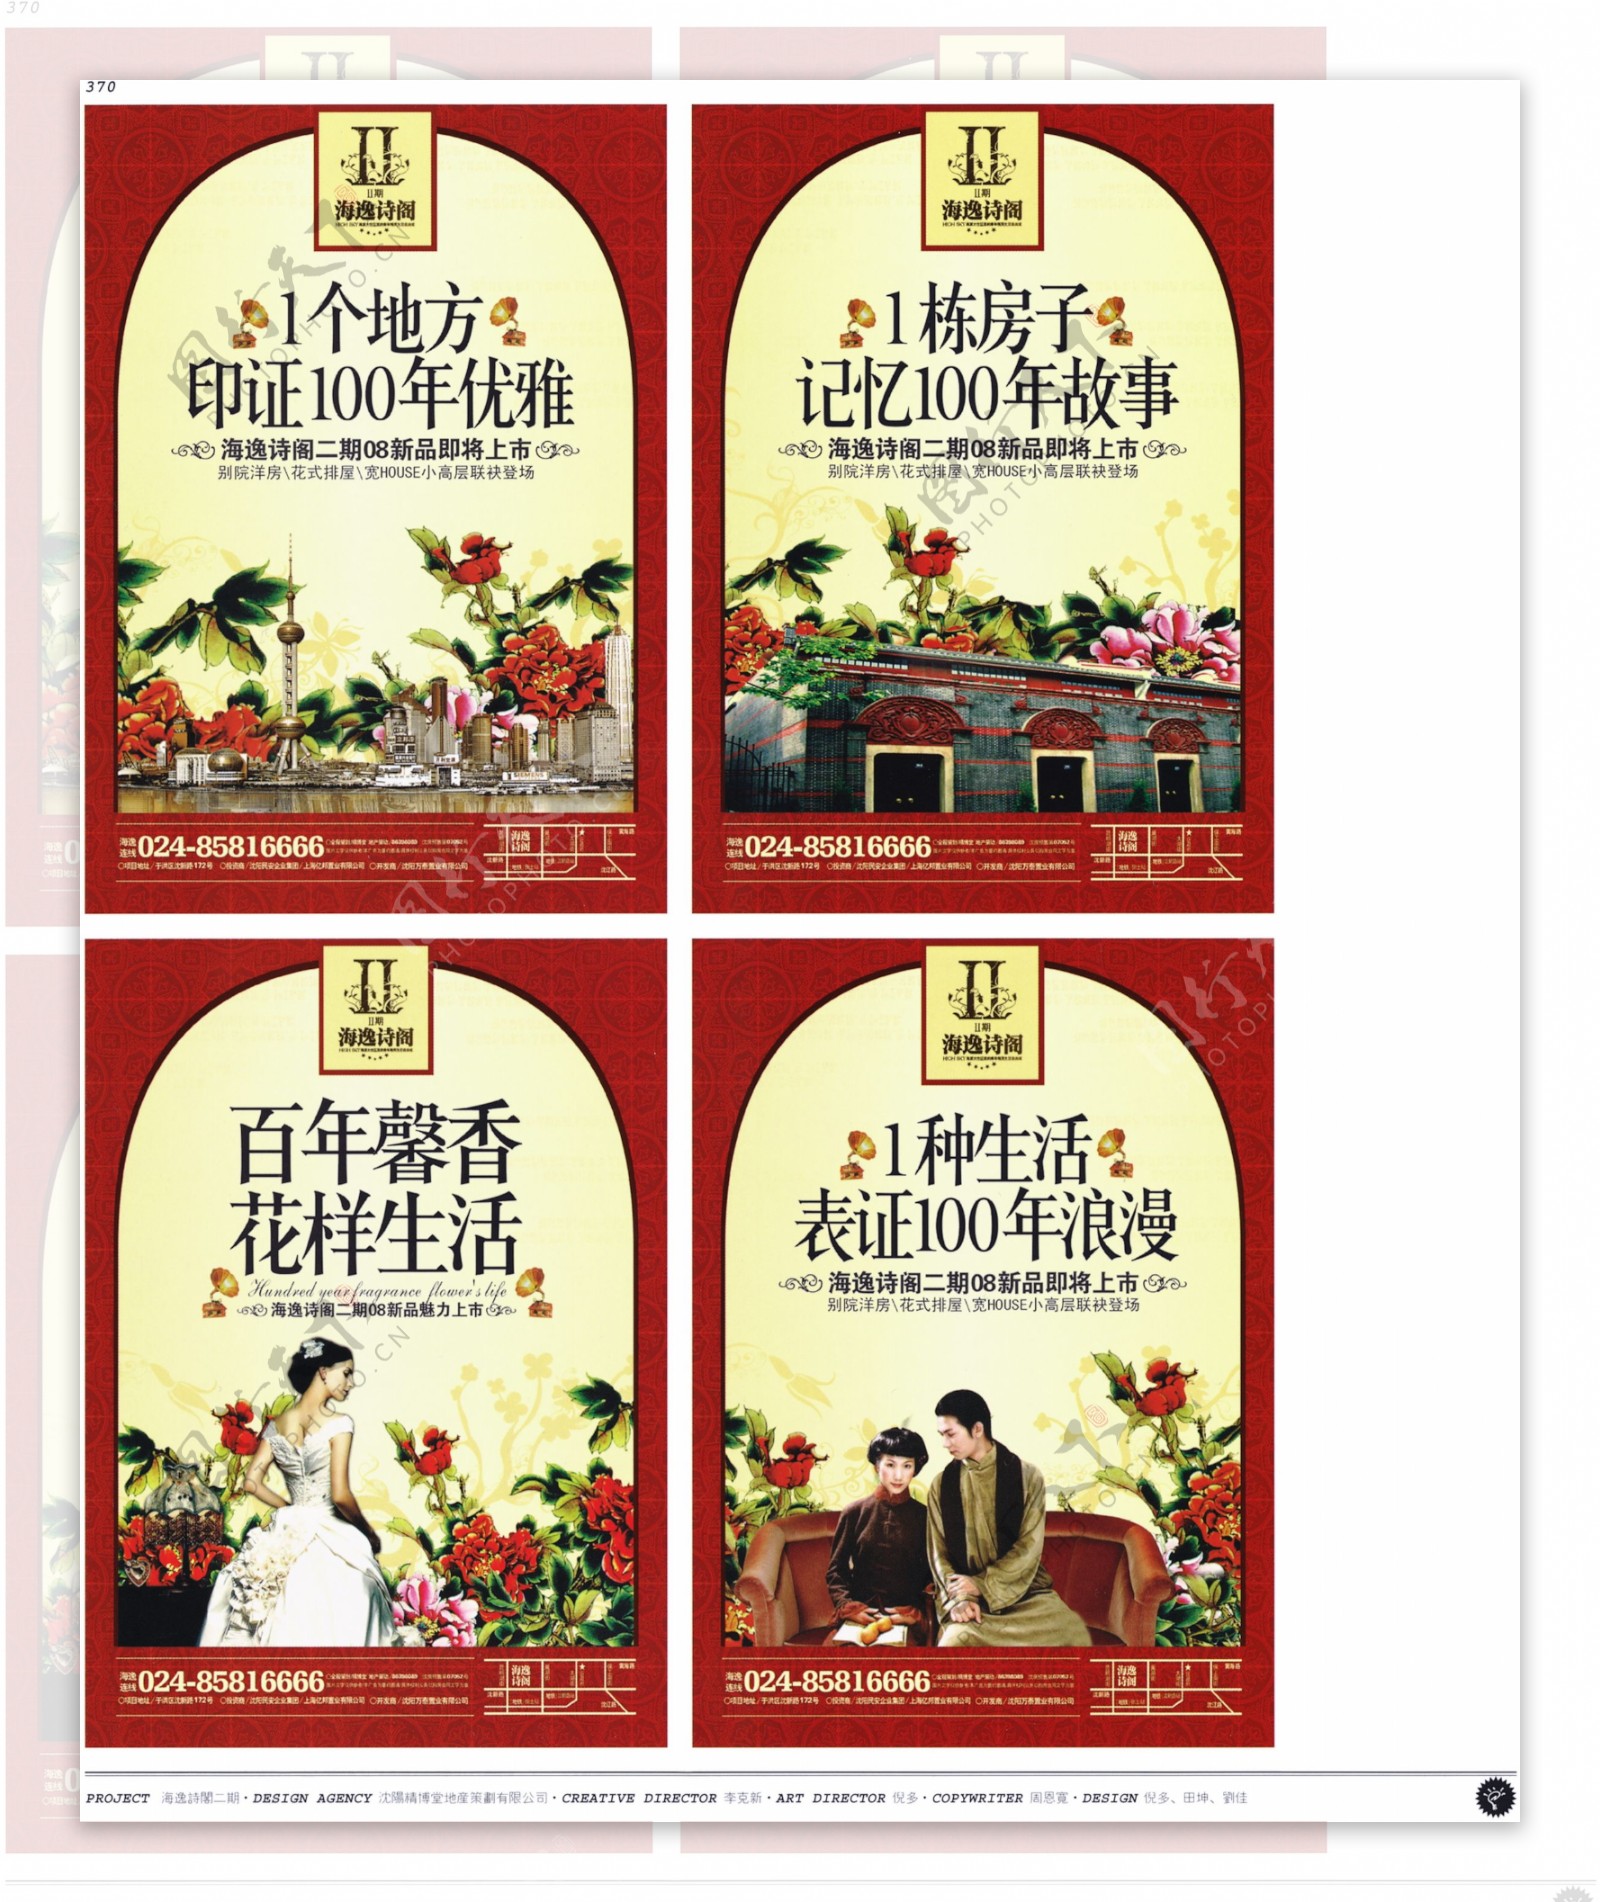 中国房地产广告年鉴第二册创意设计0364